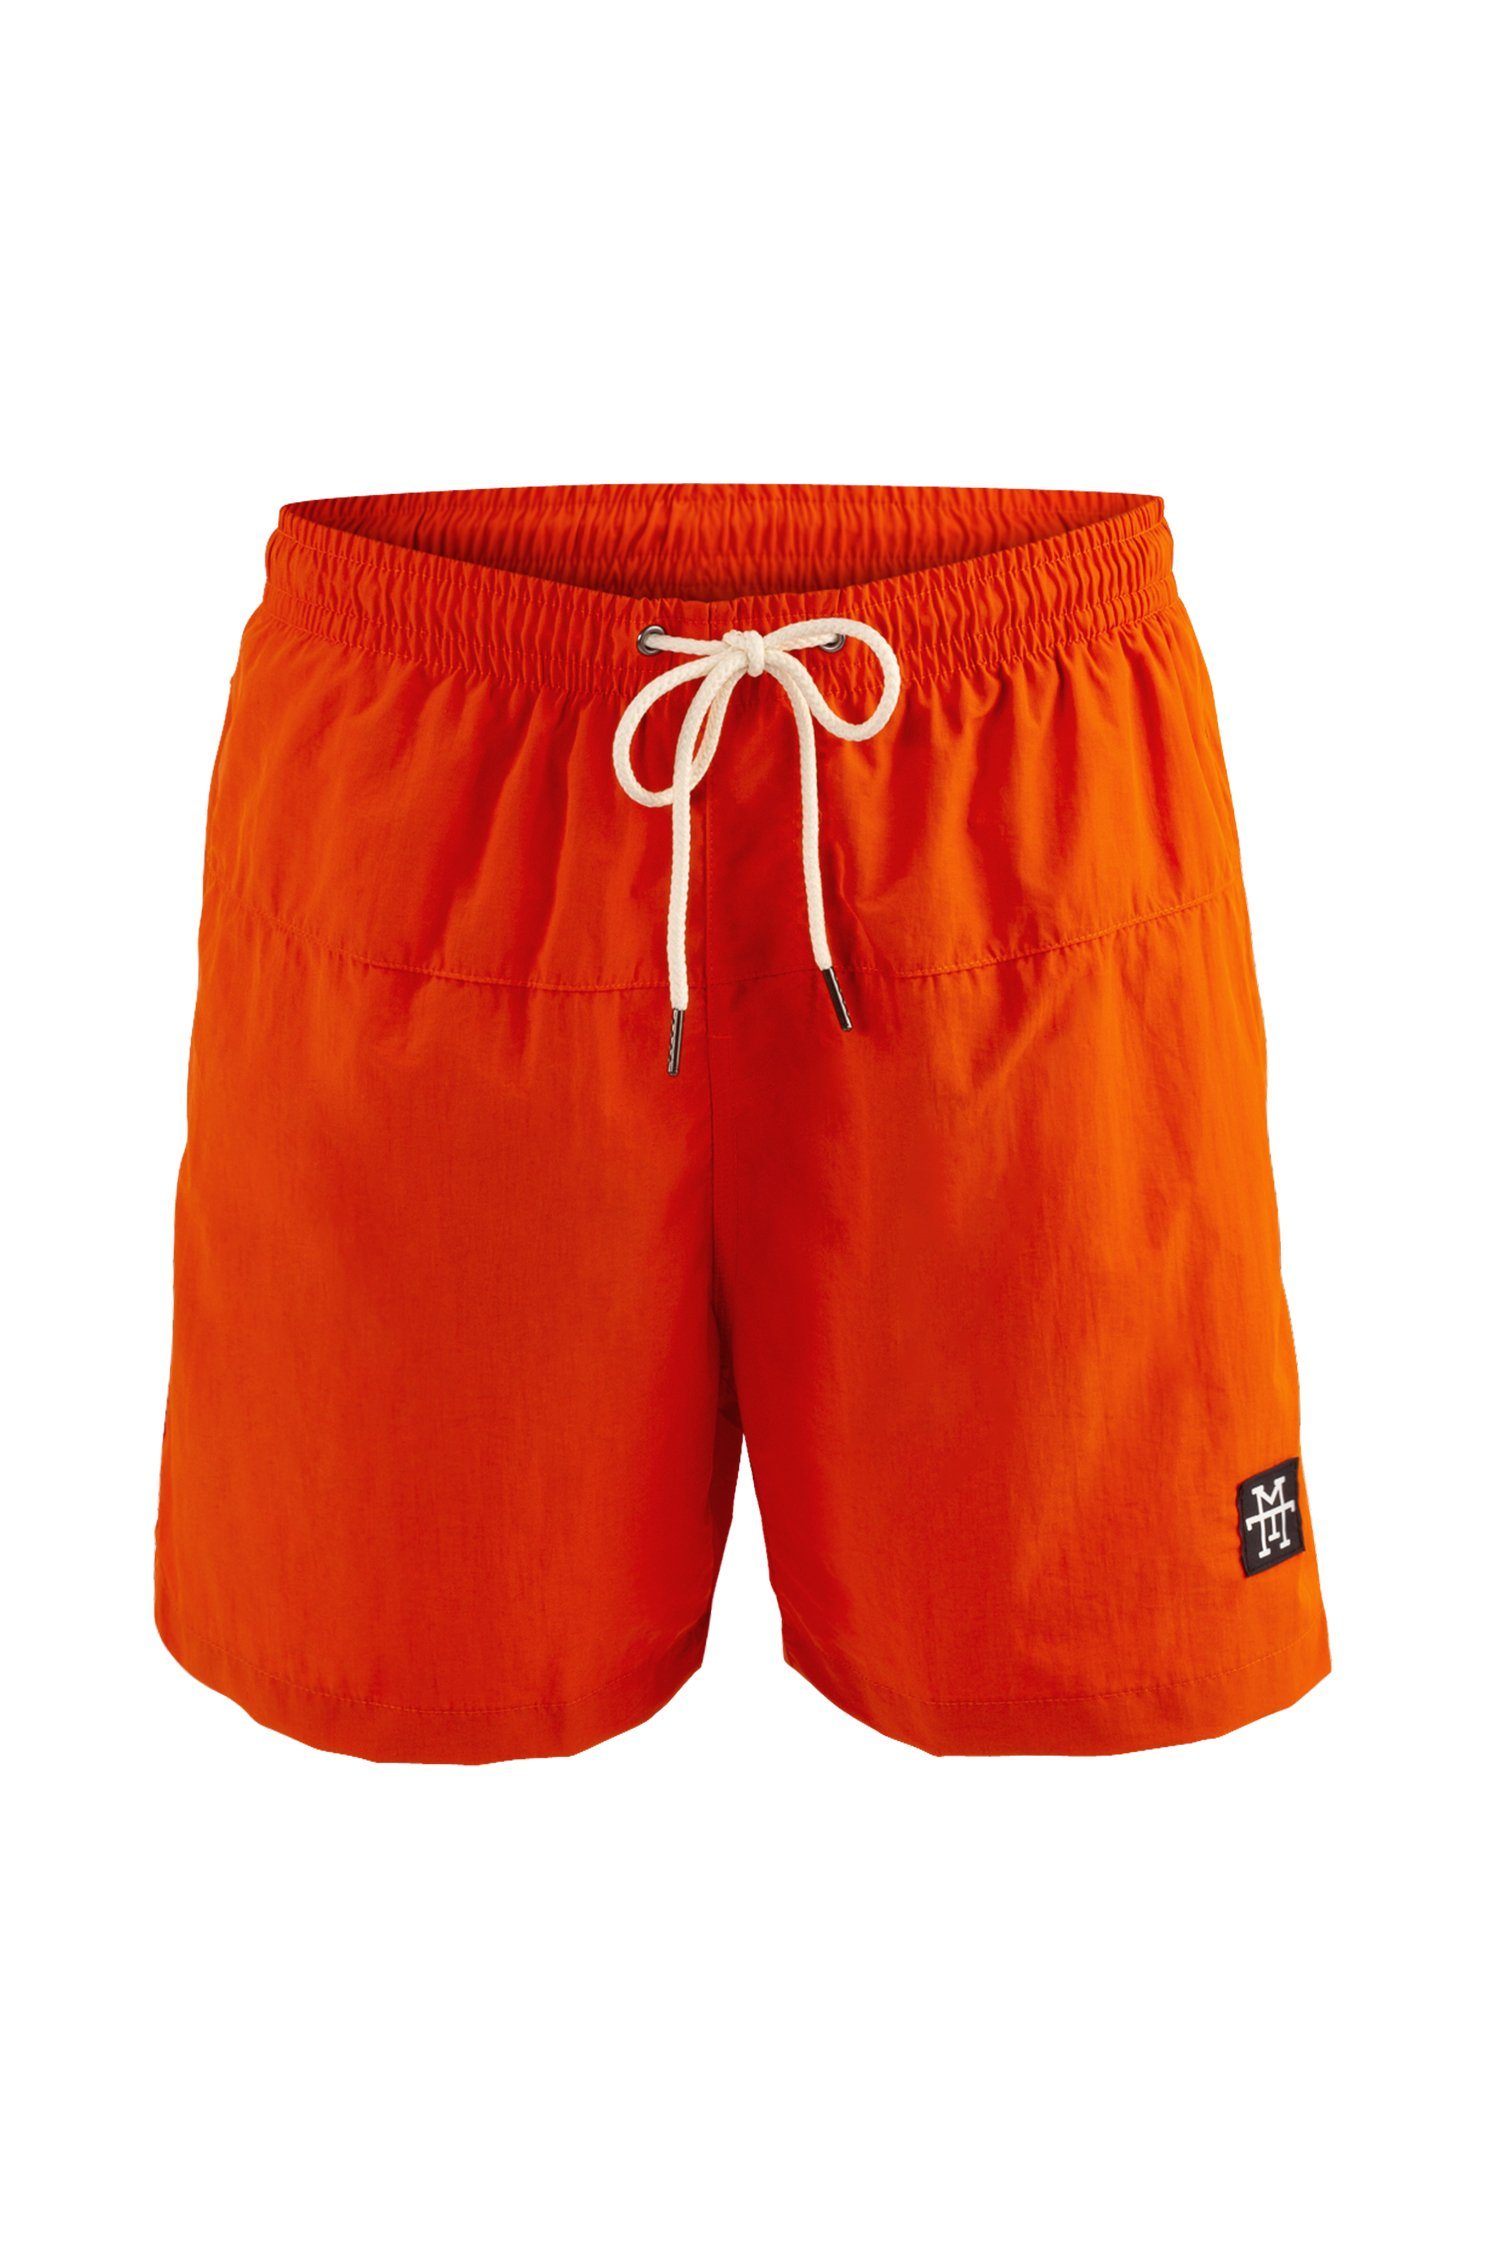 Manufaktur13 Badeshorts - Swim schnelltrocknend Tangerine Badehosen Shorts